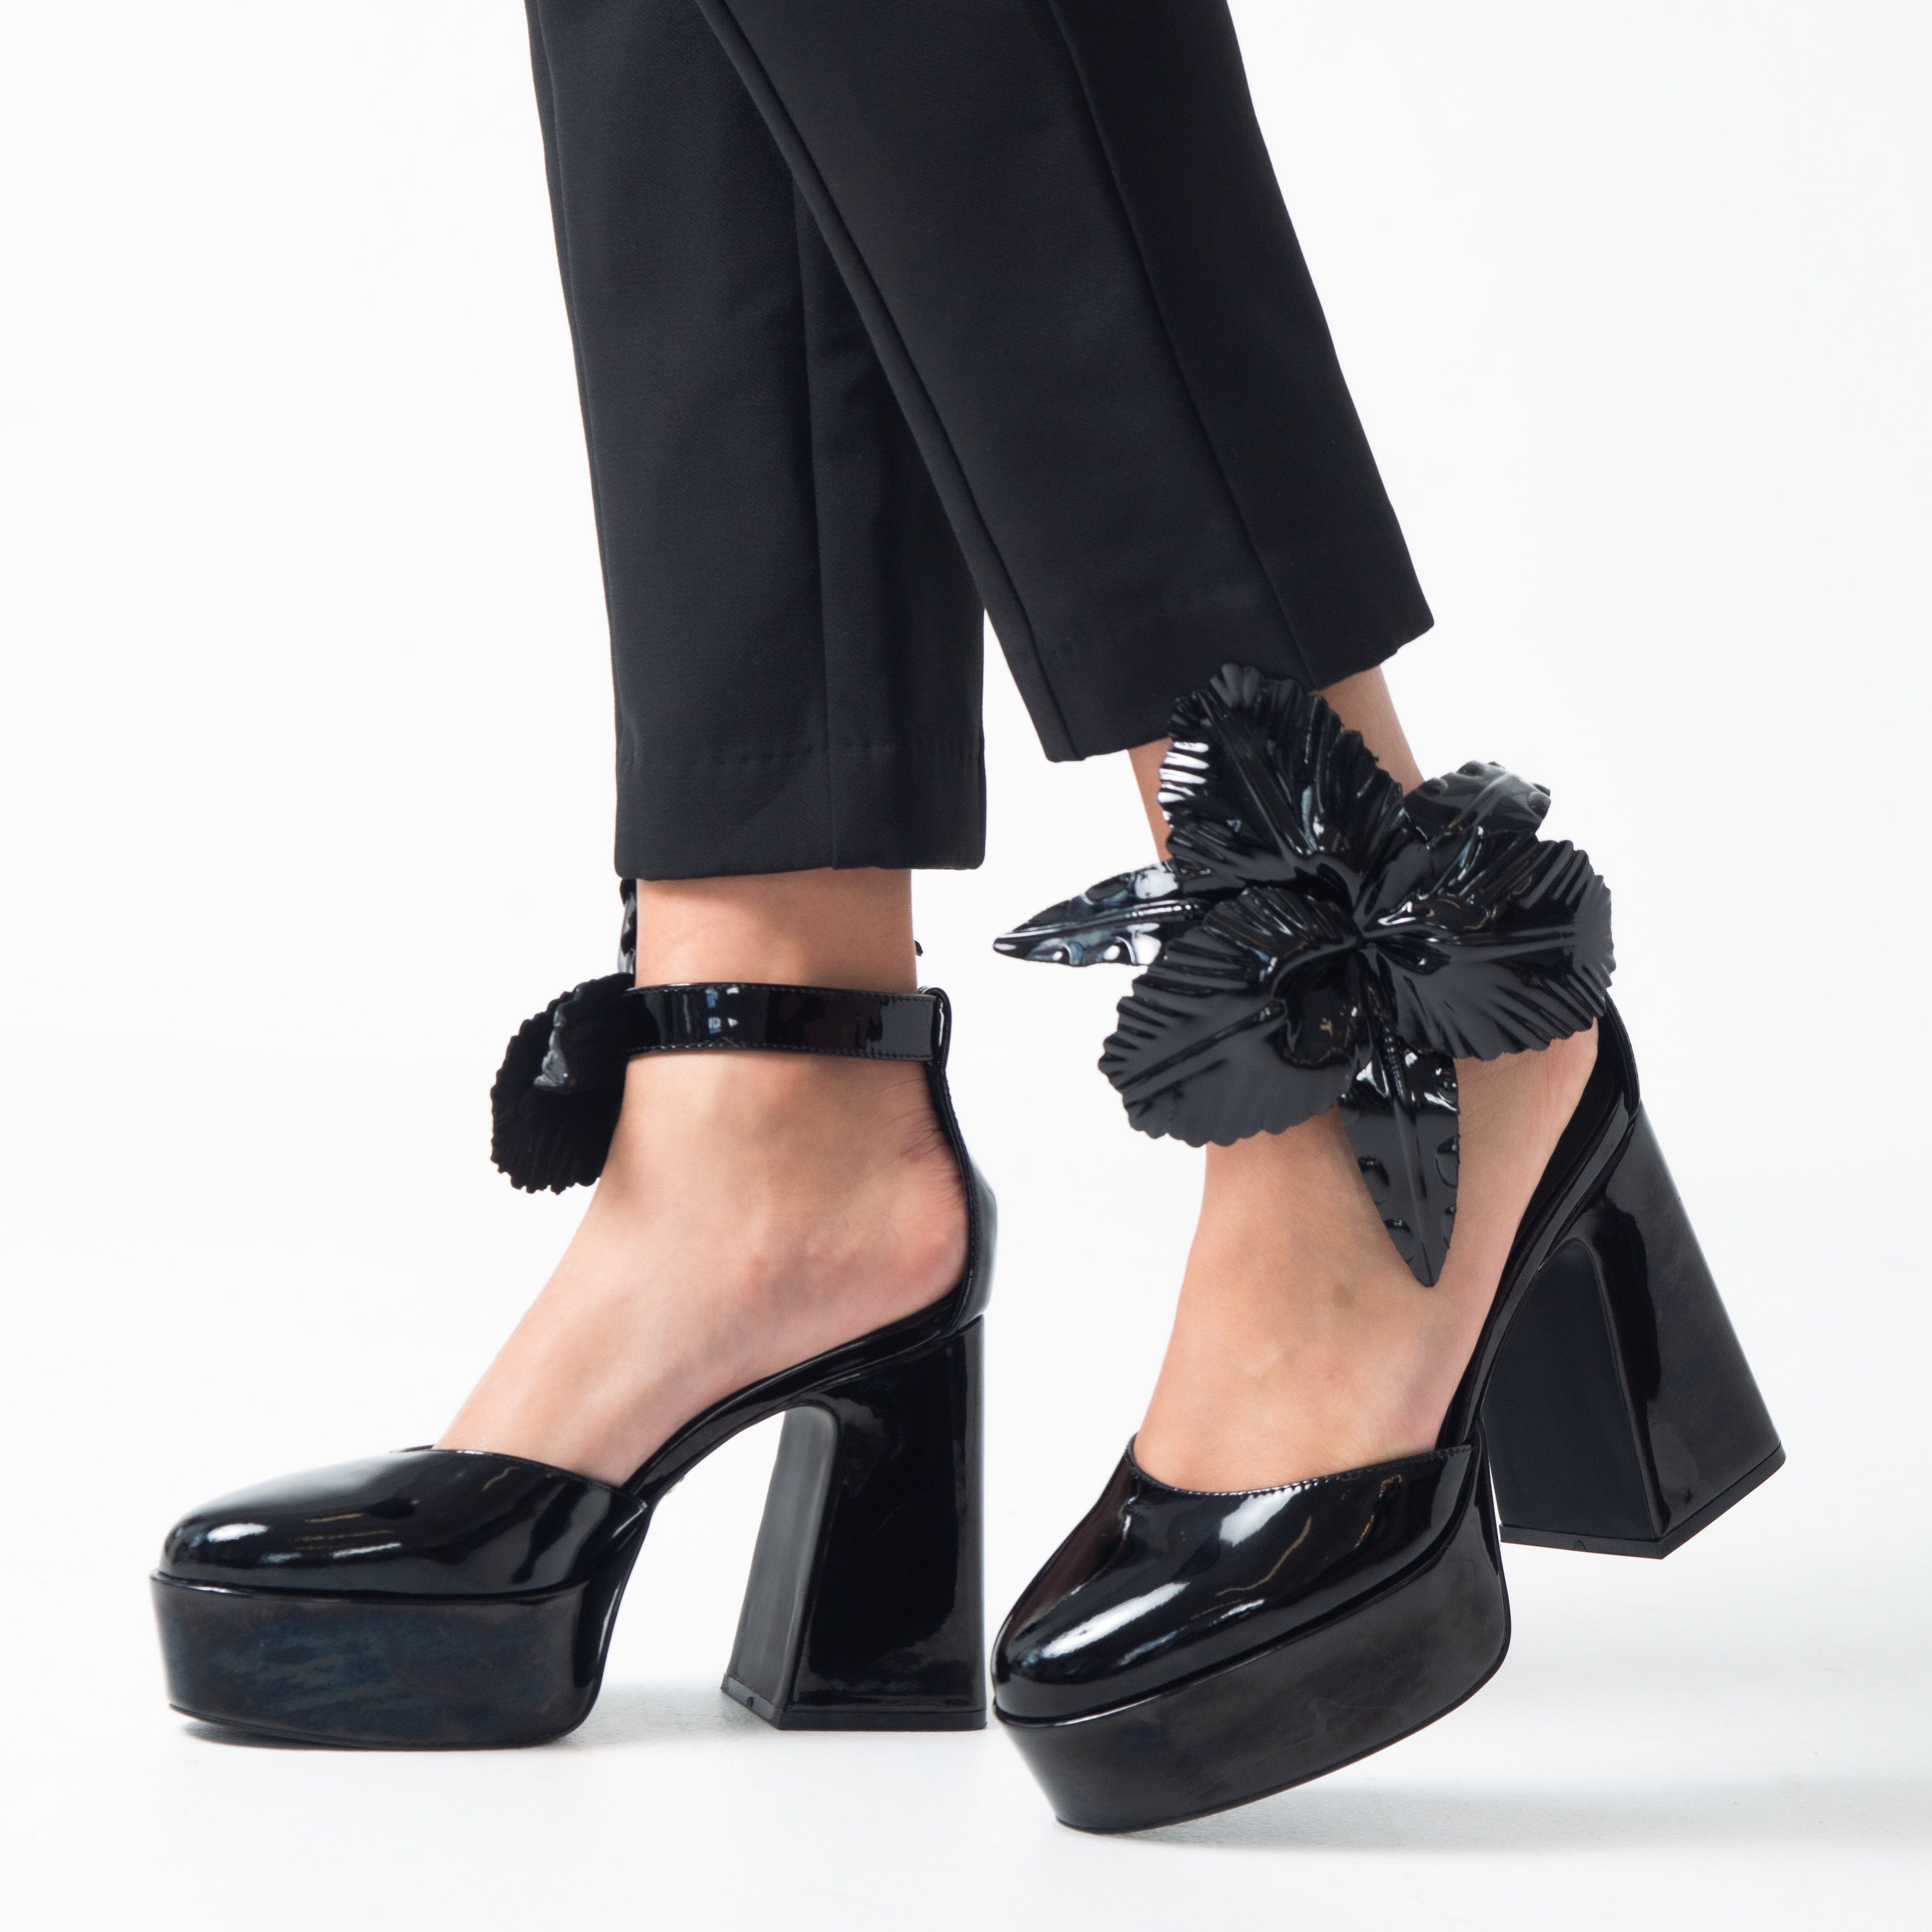 ZIPPEDY ROSE PETAL Platform Heels | Buy Women's HEELS Online | Novo Shoes NZ